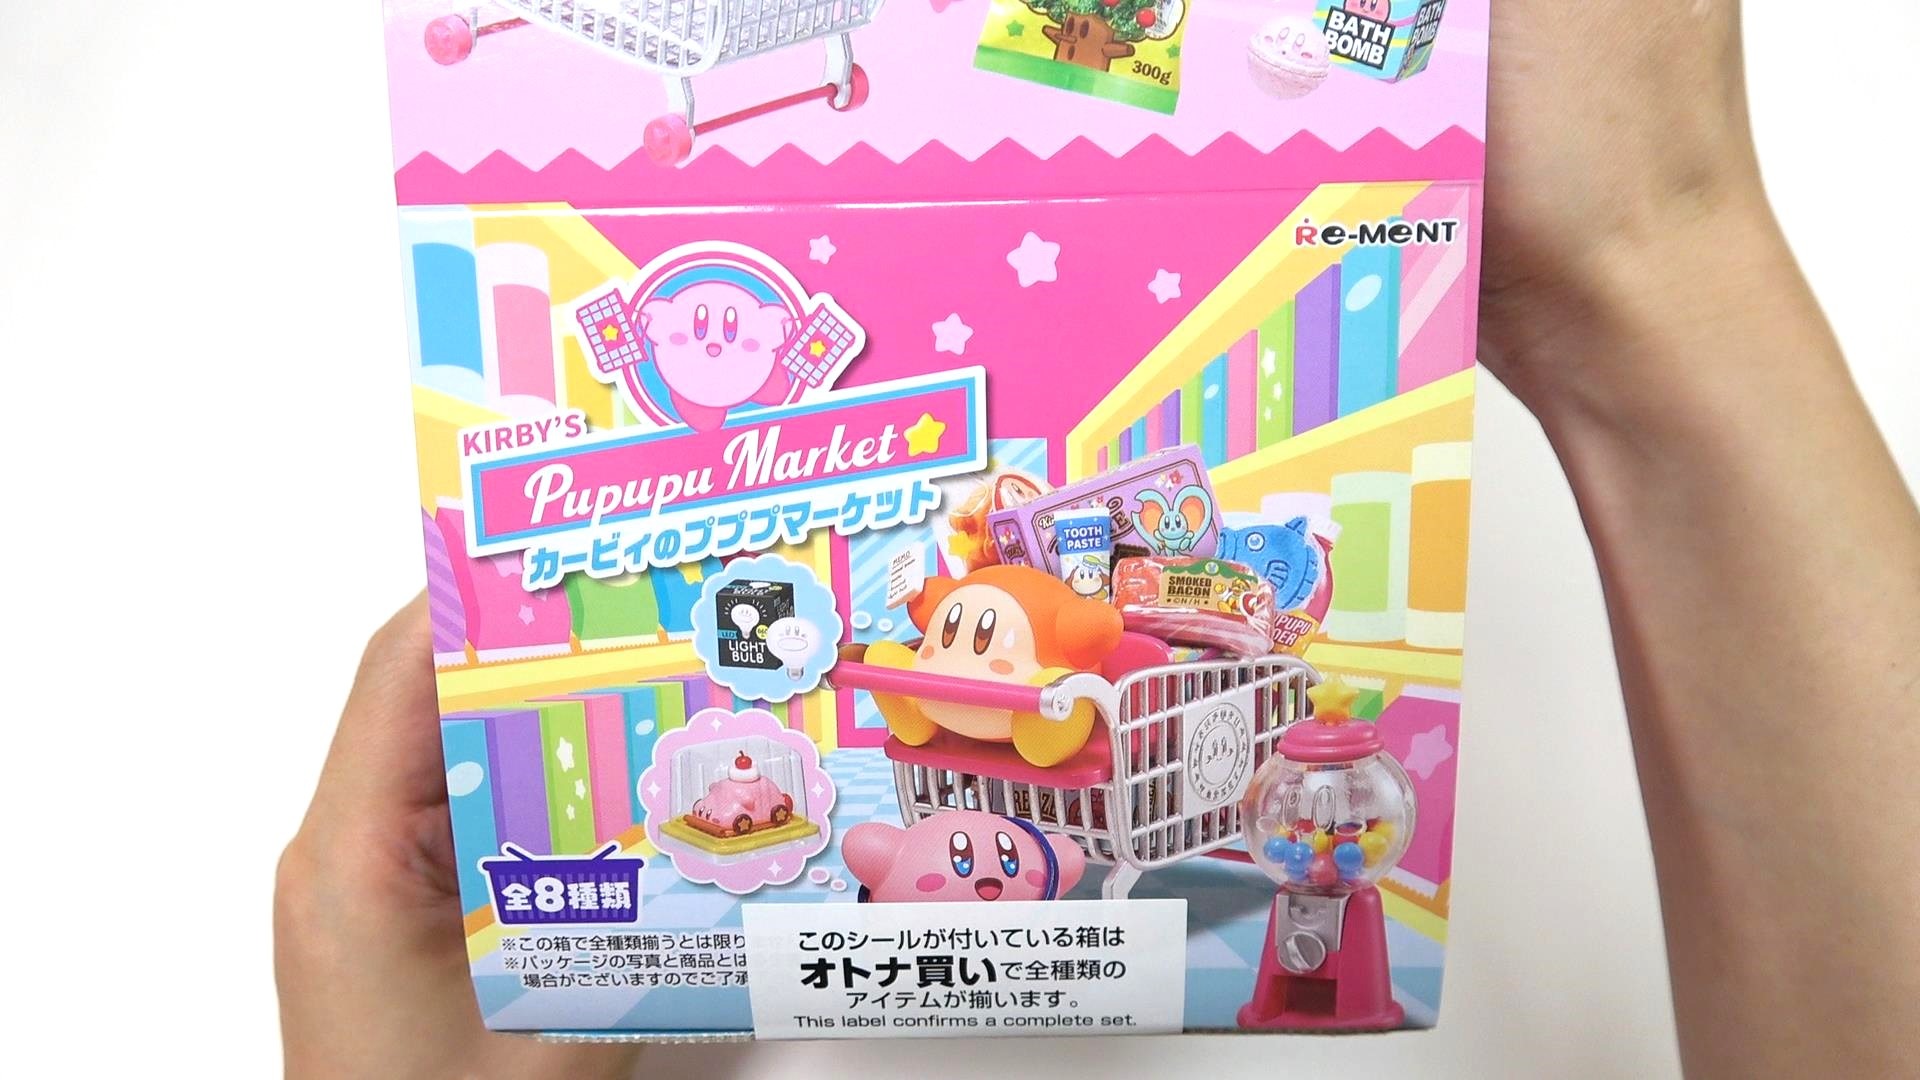 大阪でリーメント「カービィのプププマーケット」の先行販売を発見 